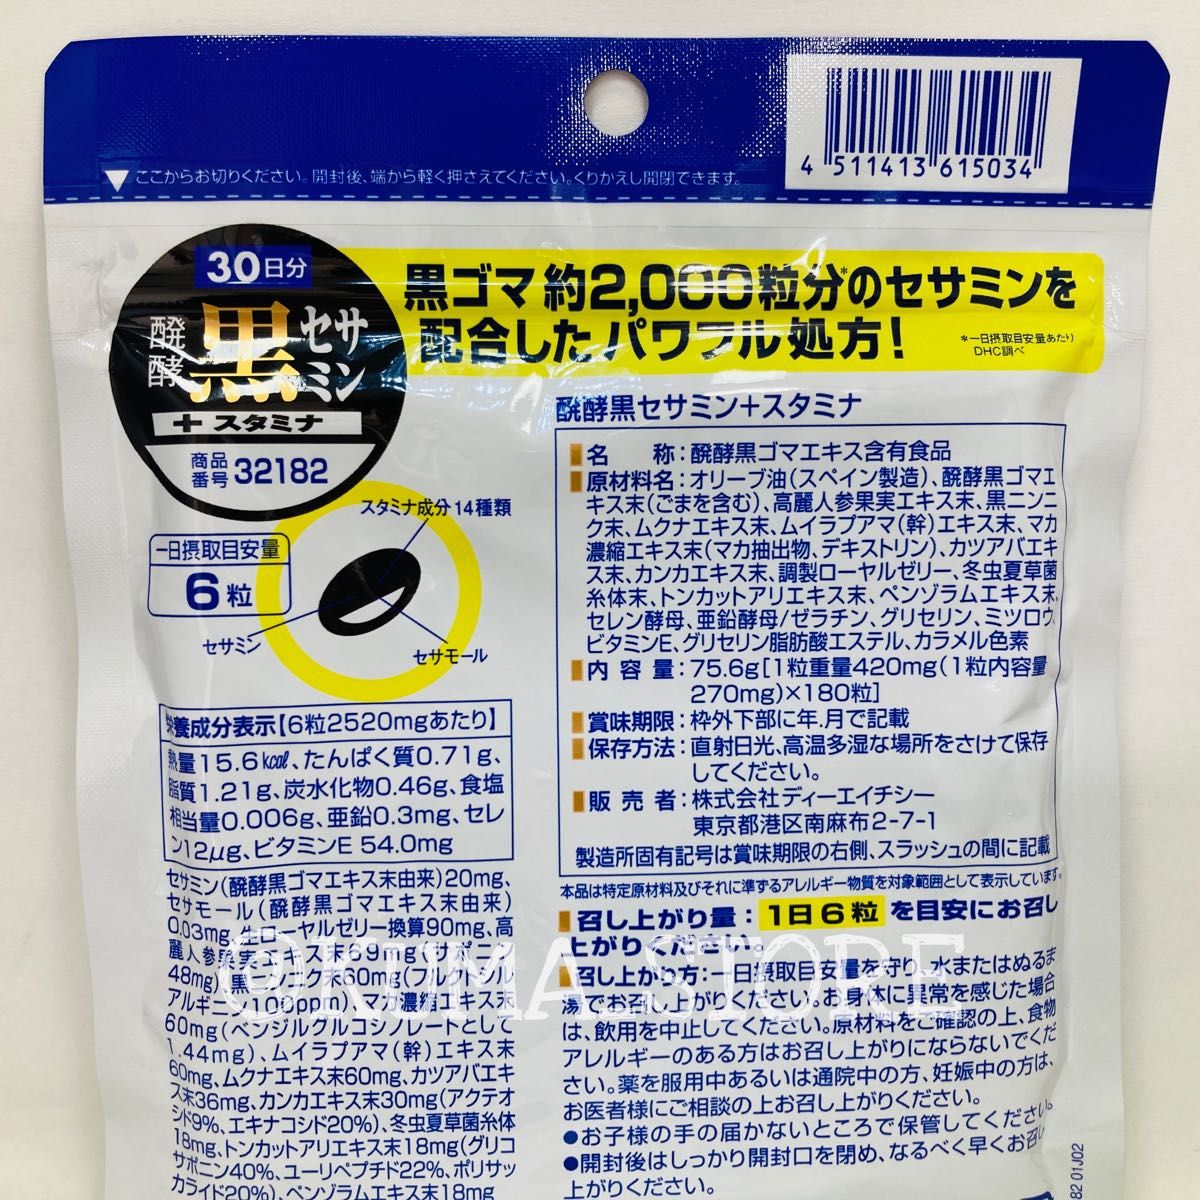 2袋 DHC 醗酵黒セサミン+スタミナ 30日分 亜鉛 トンカットアリ マカ 健康食品 サプリメント 発酵 プラス